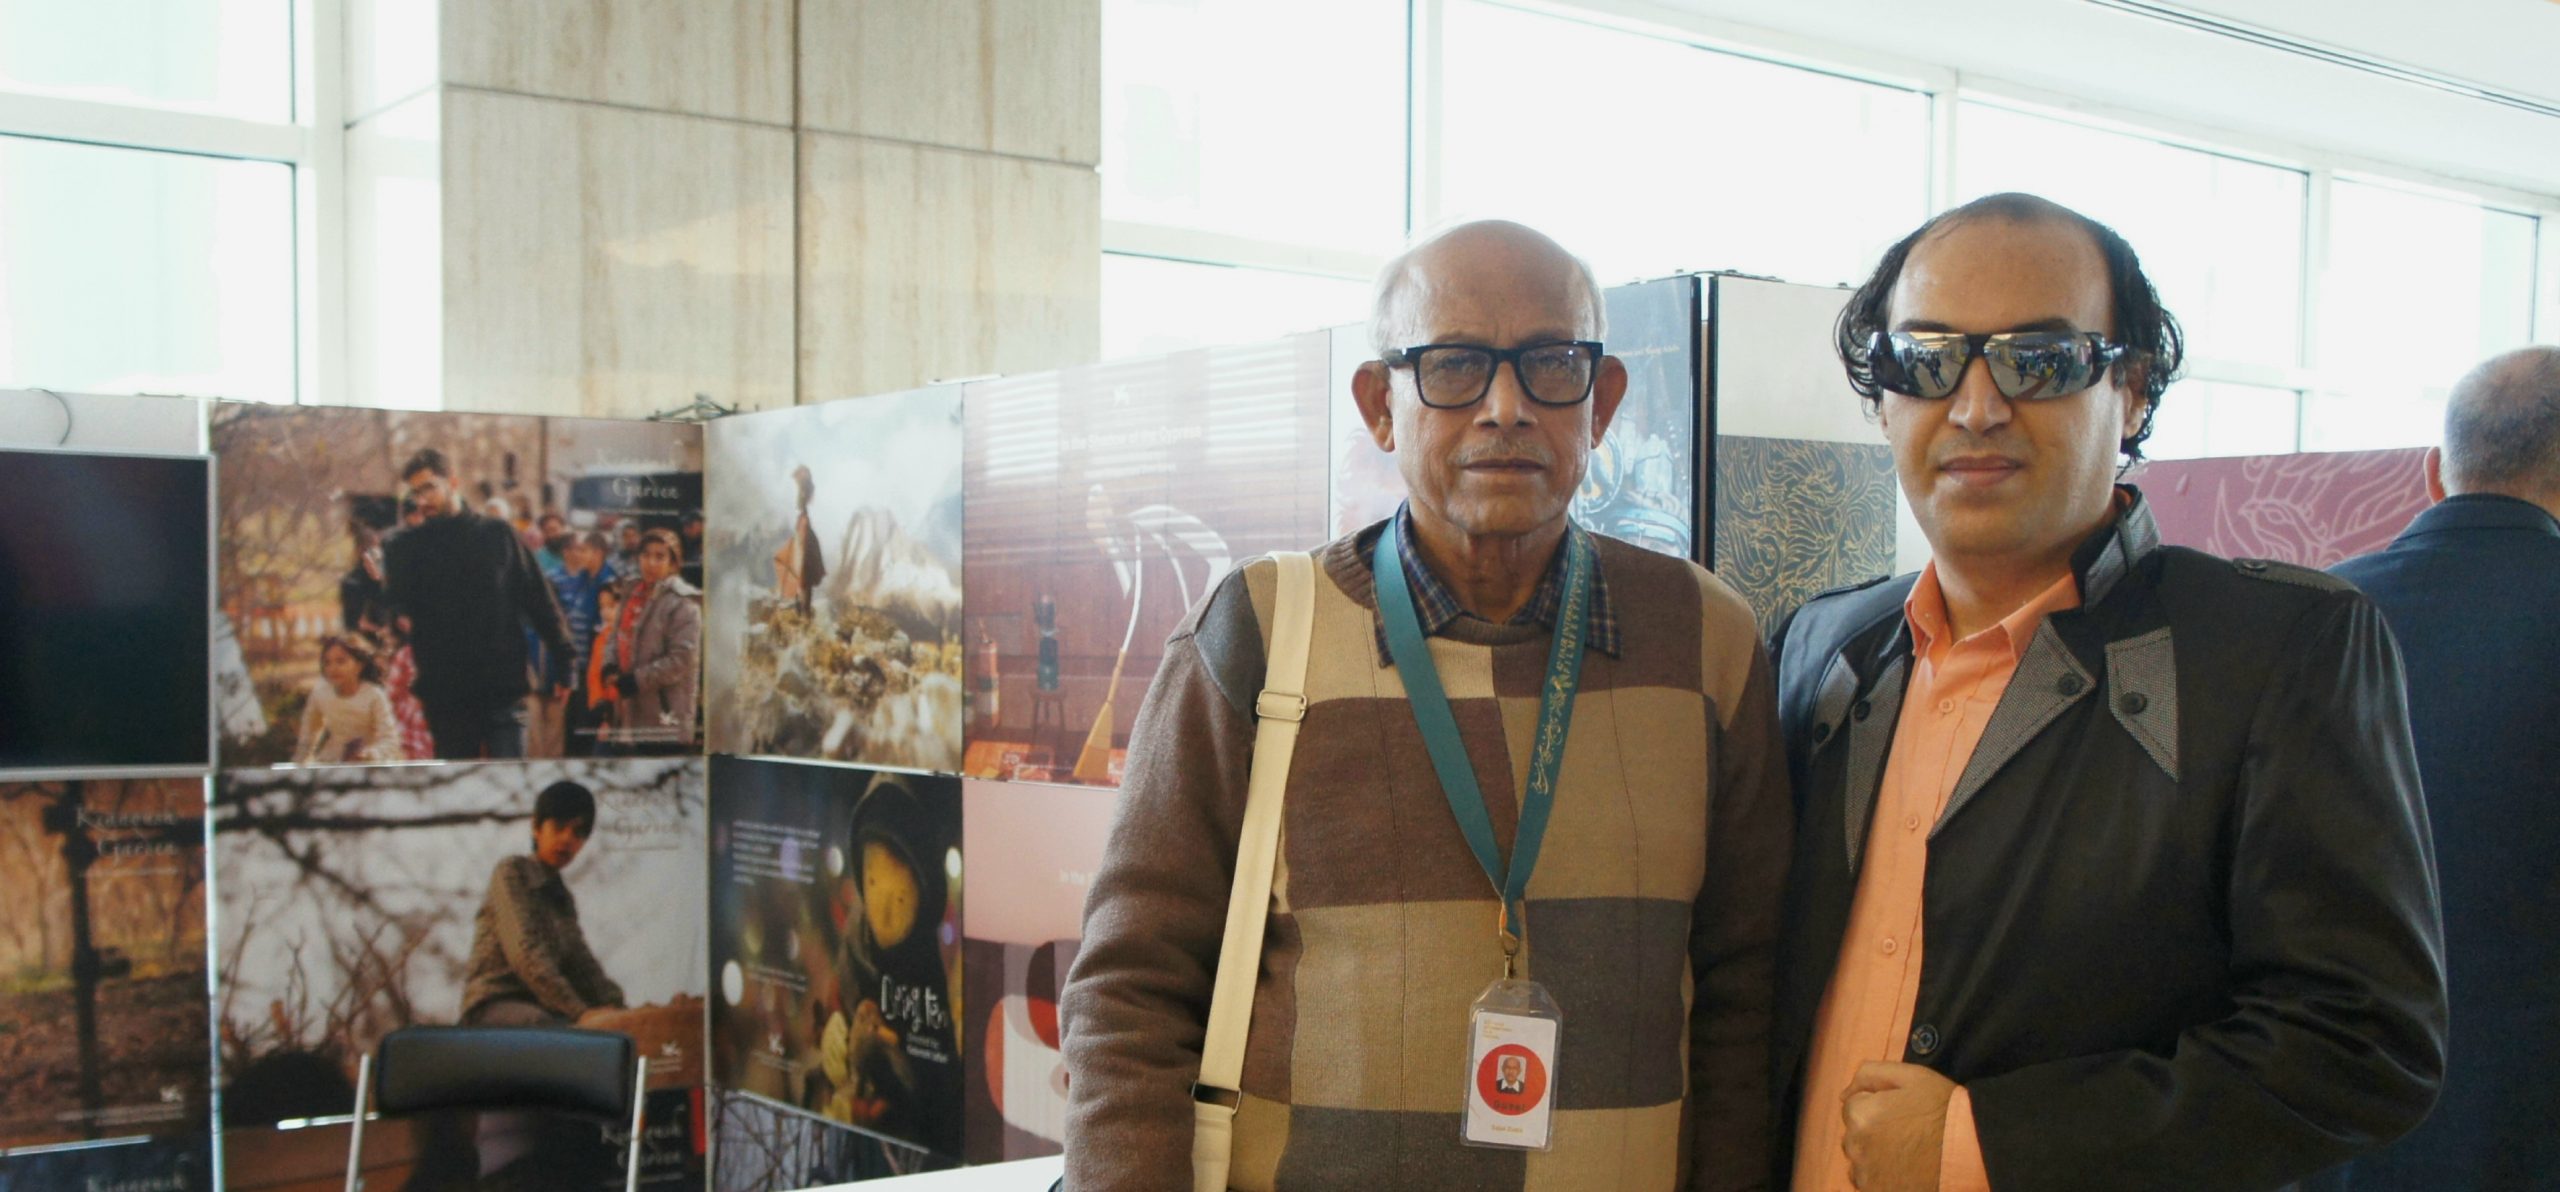 سجاد اصغری به همراه ساجال داتا دبیر دور هفتم بخش بین الملل مراسم آکادمی افسانه زندگی در جشنواره جهانی فجر۴۲ + عکس